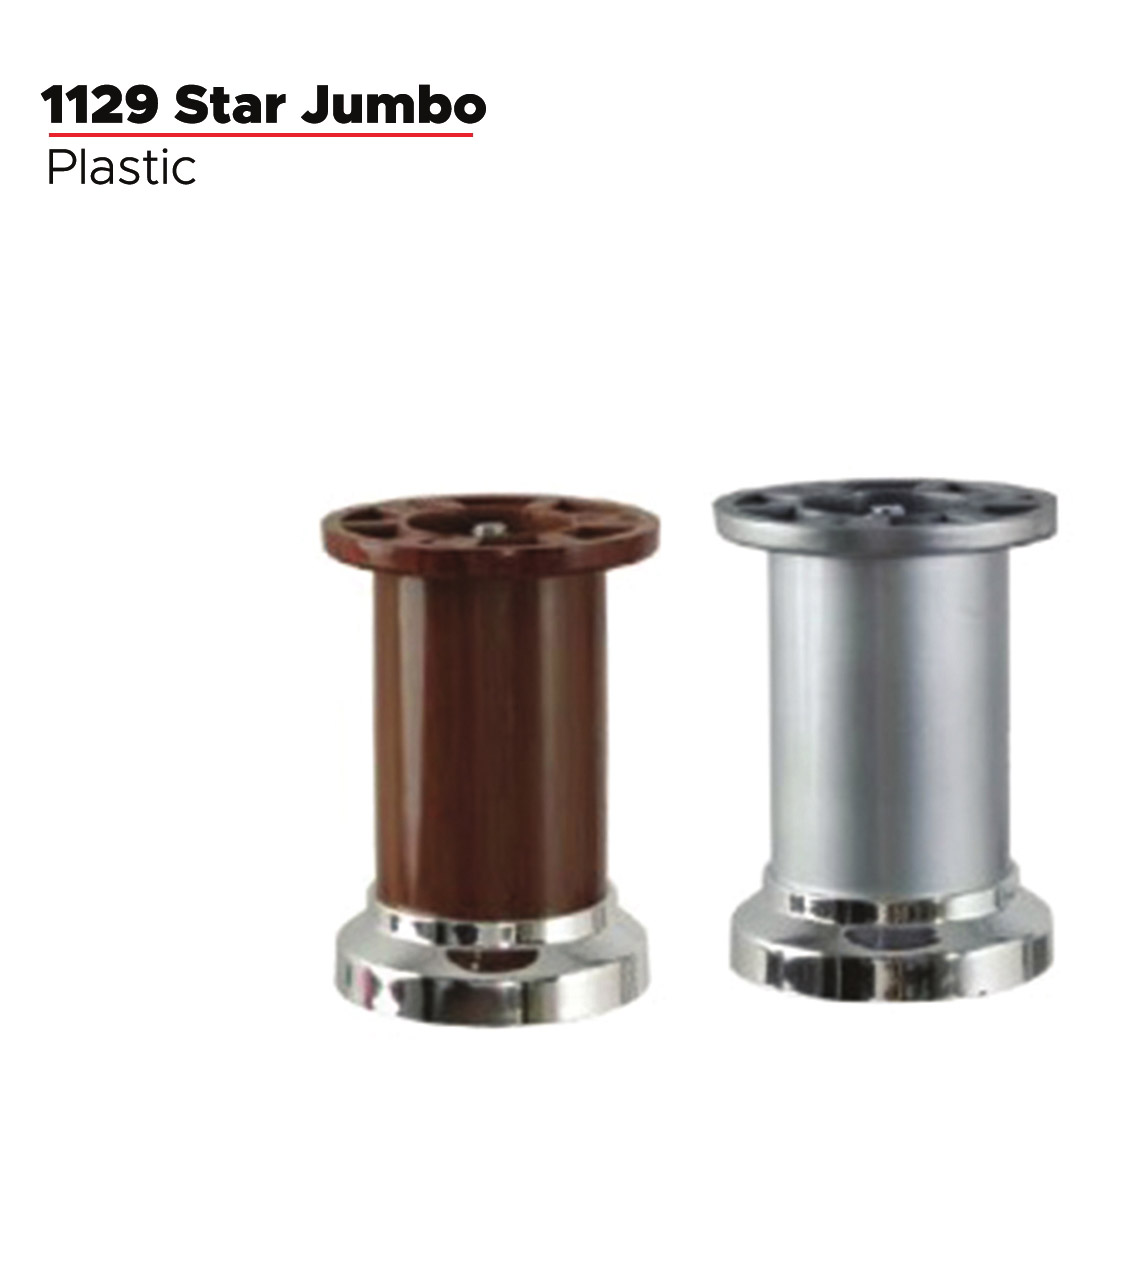 1129 Star Jumbo